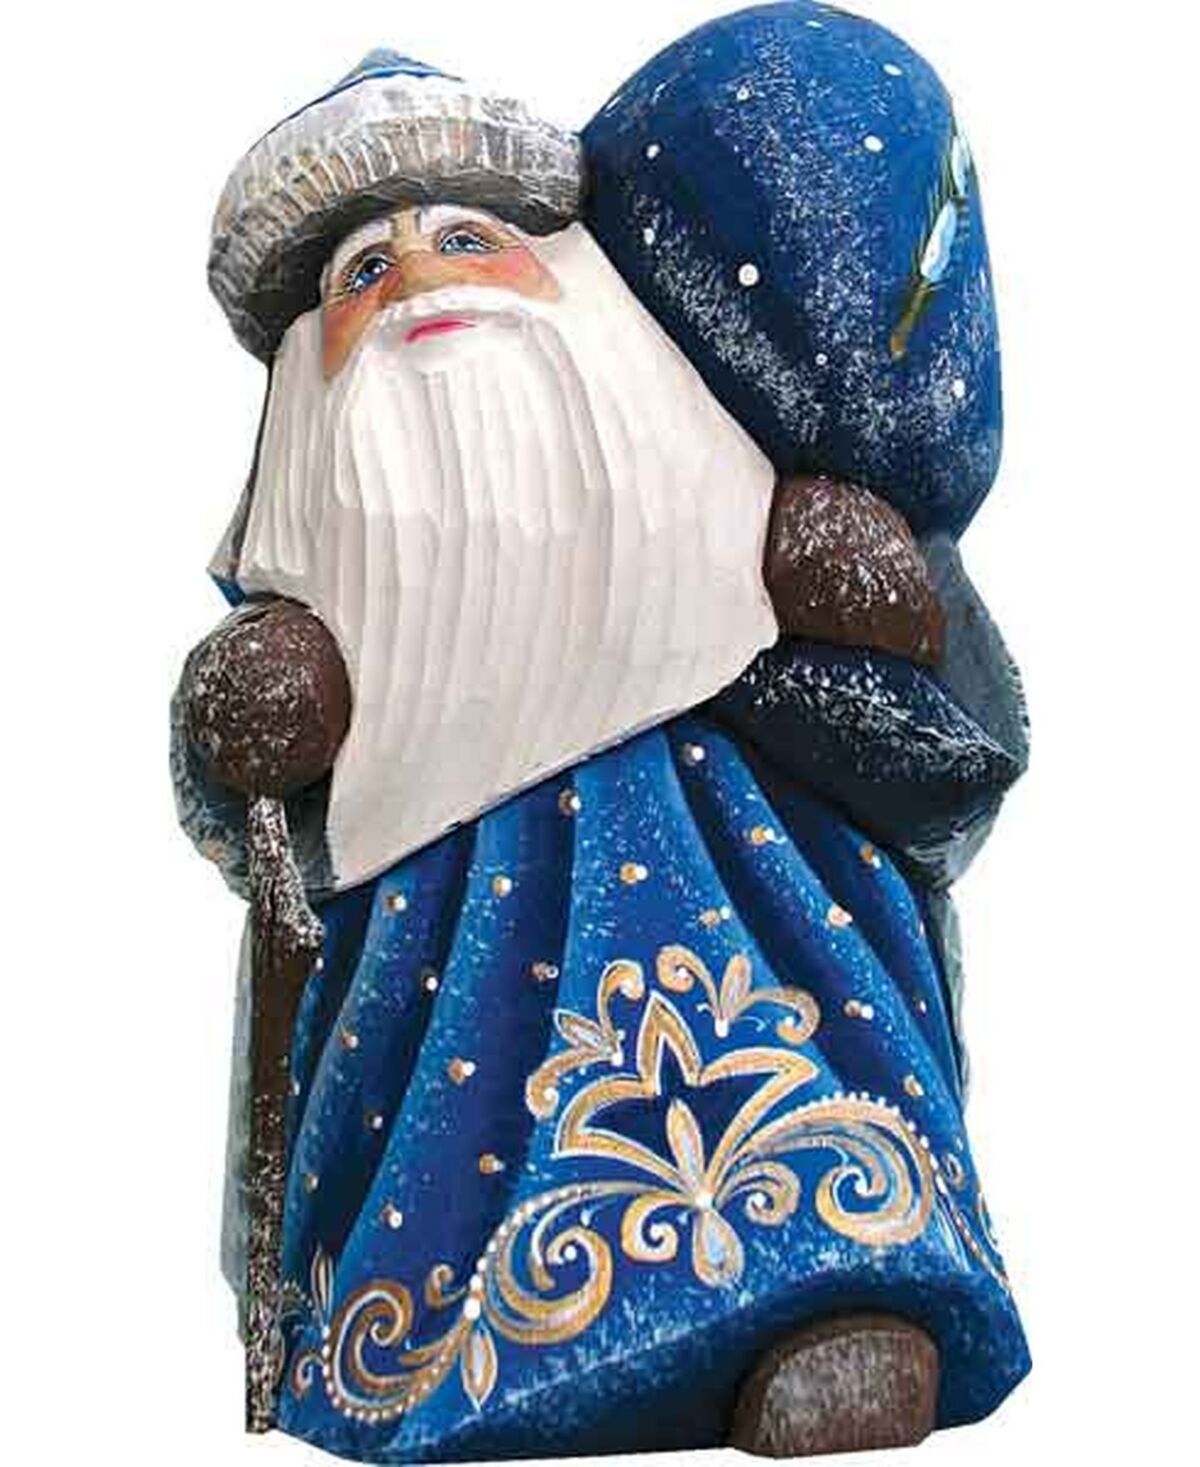 G.DeBrekht Woodcarved Hand Painted Santa Delightfully Fun Yuletide Figurine - Multi